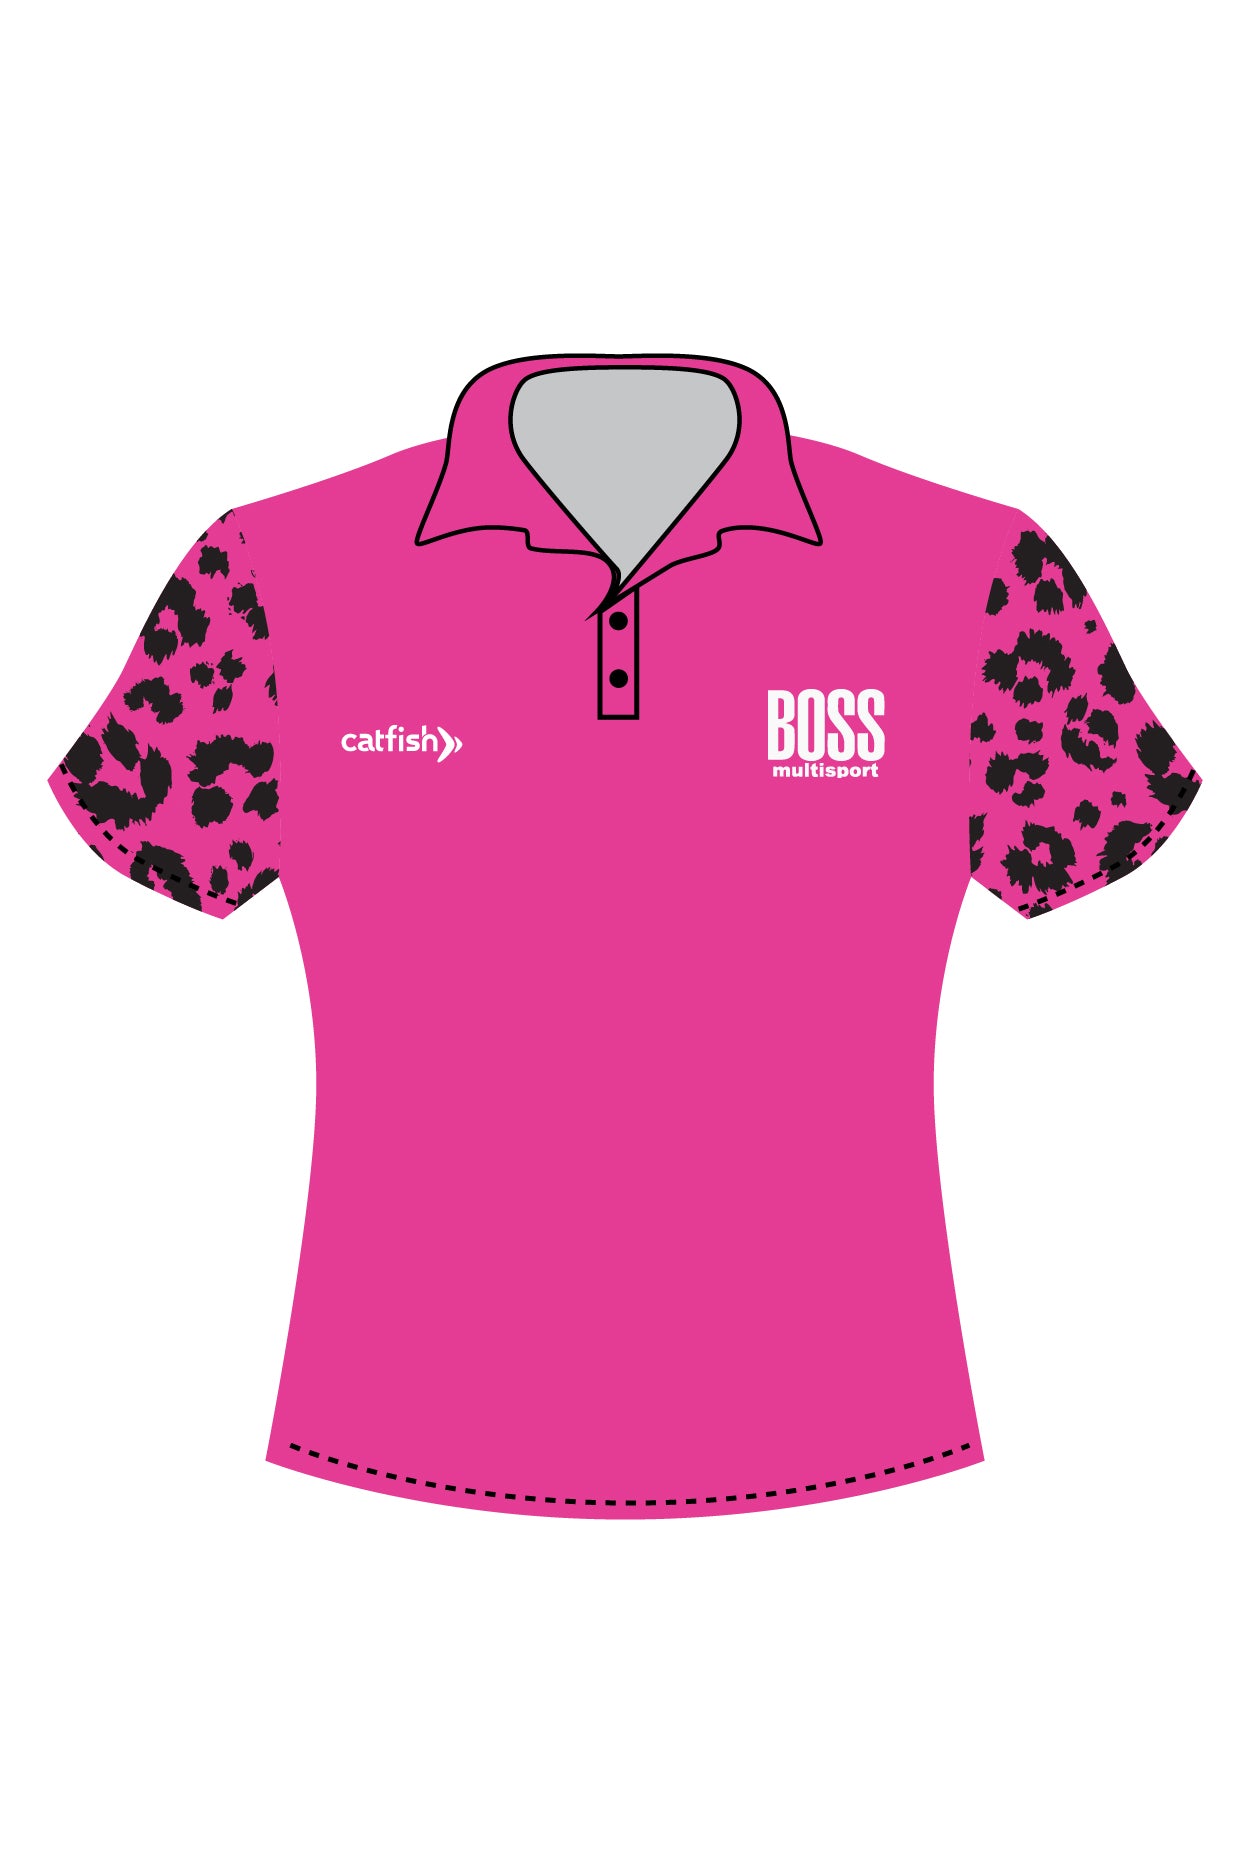 Boss Multisport Women's Sports Polo